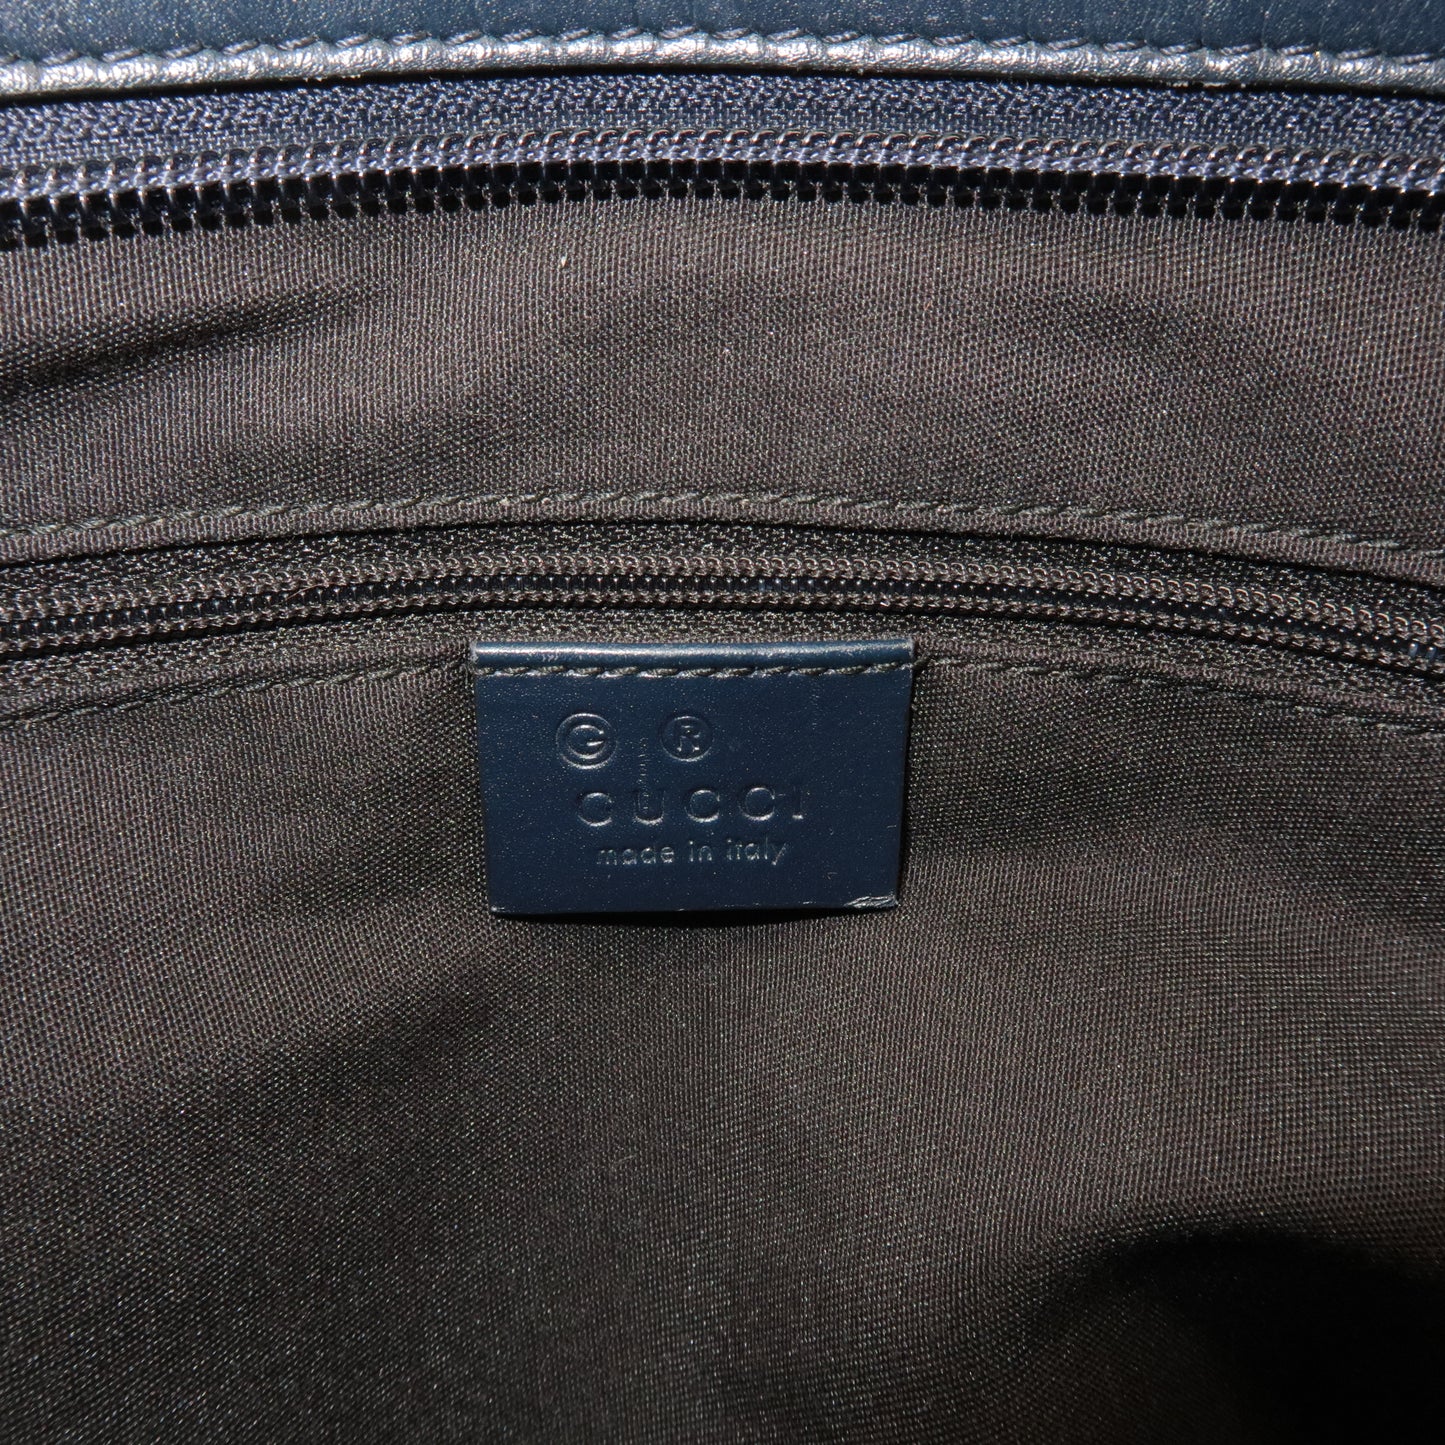 GUCCI GG Supreme Leather Shoulder Bag Beige Navy 388924